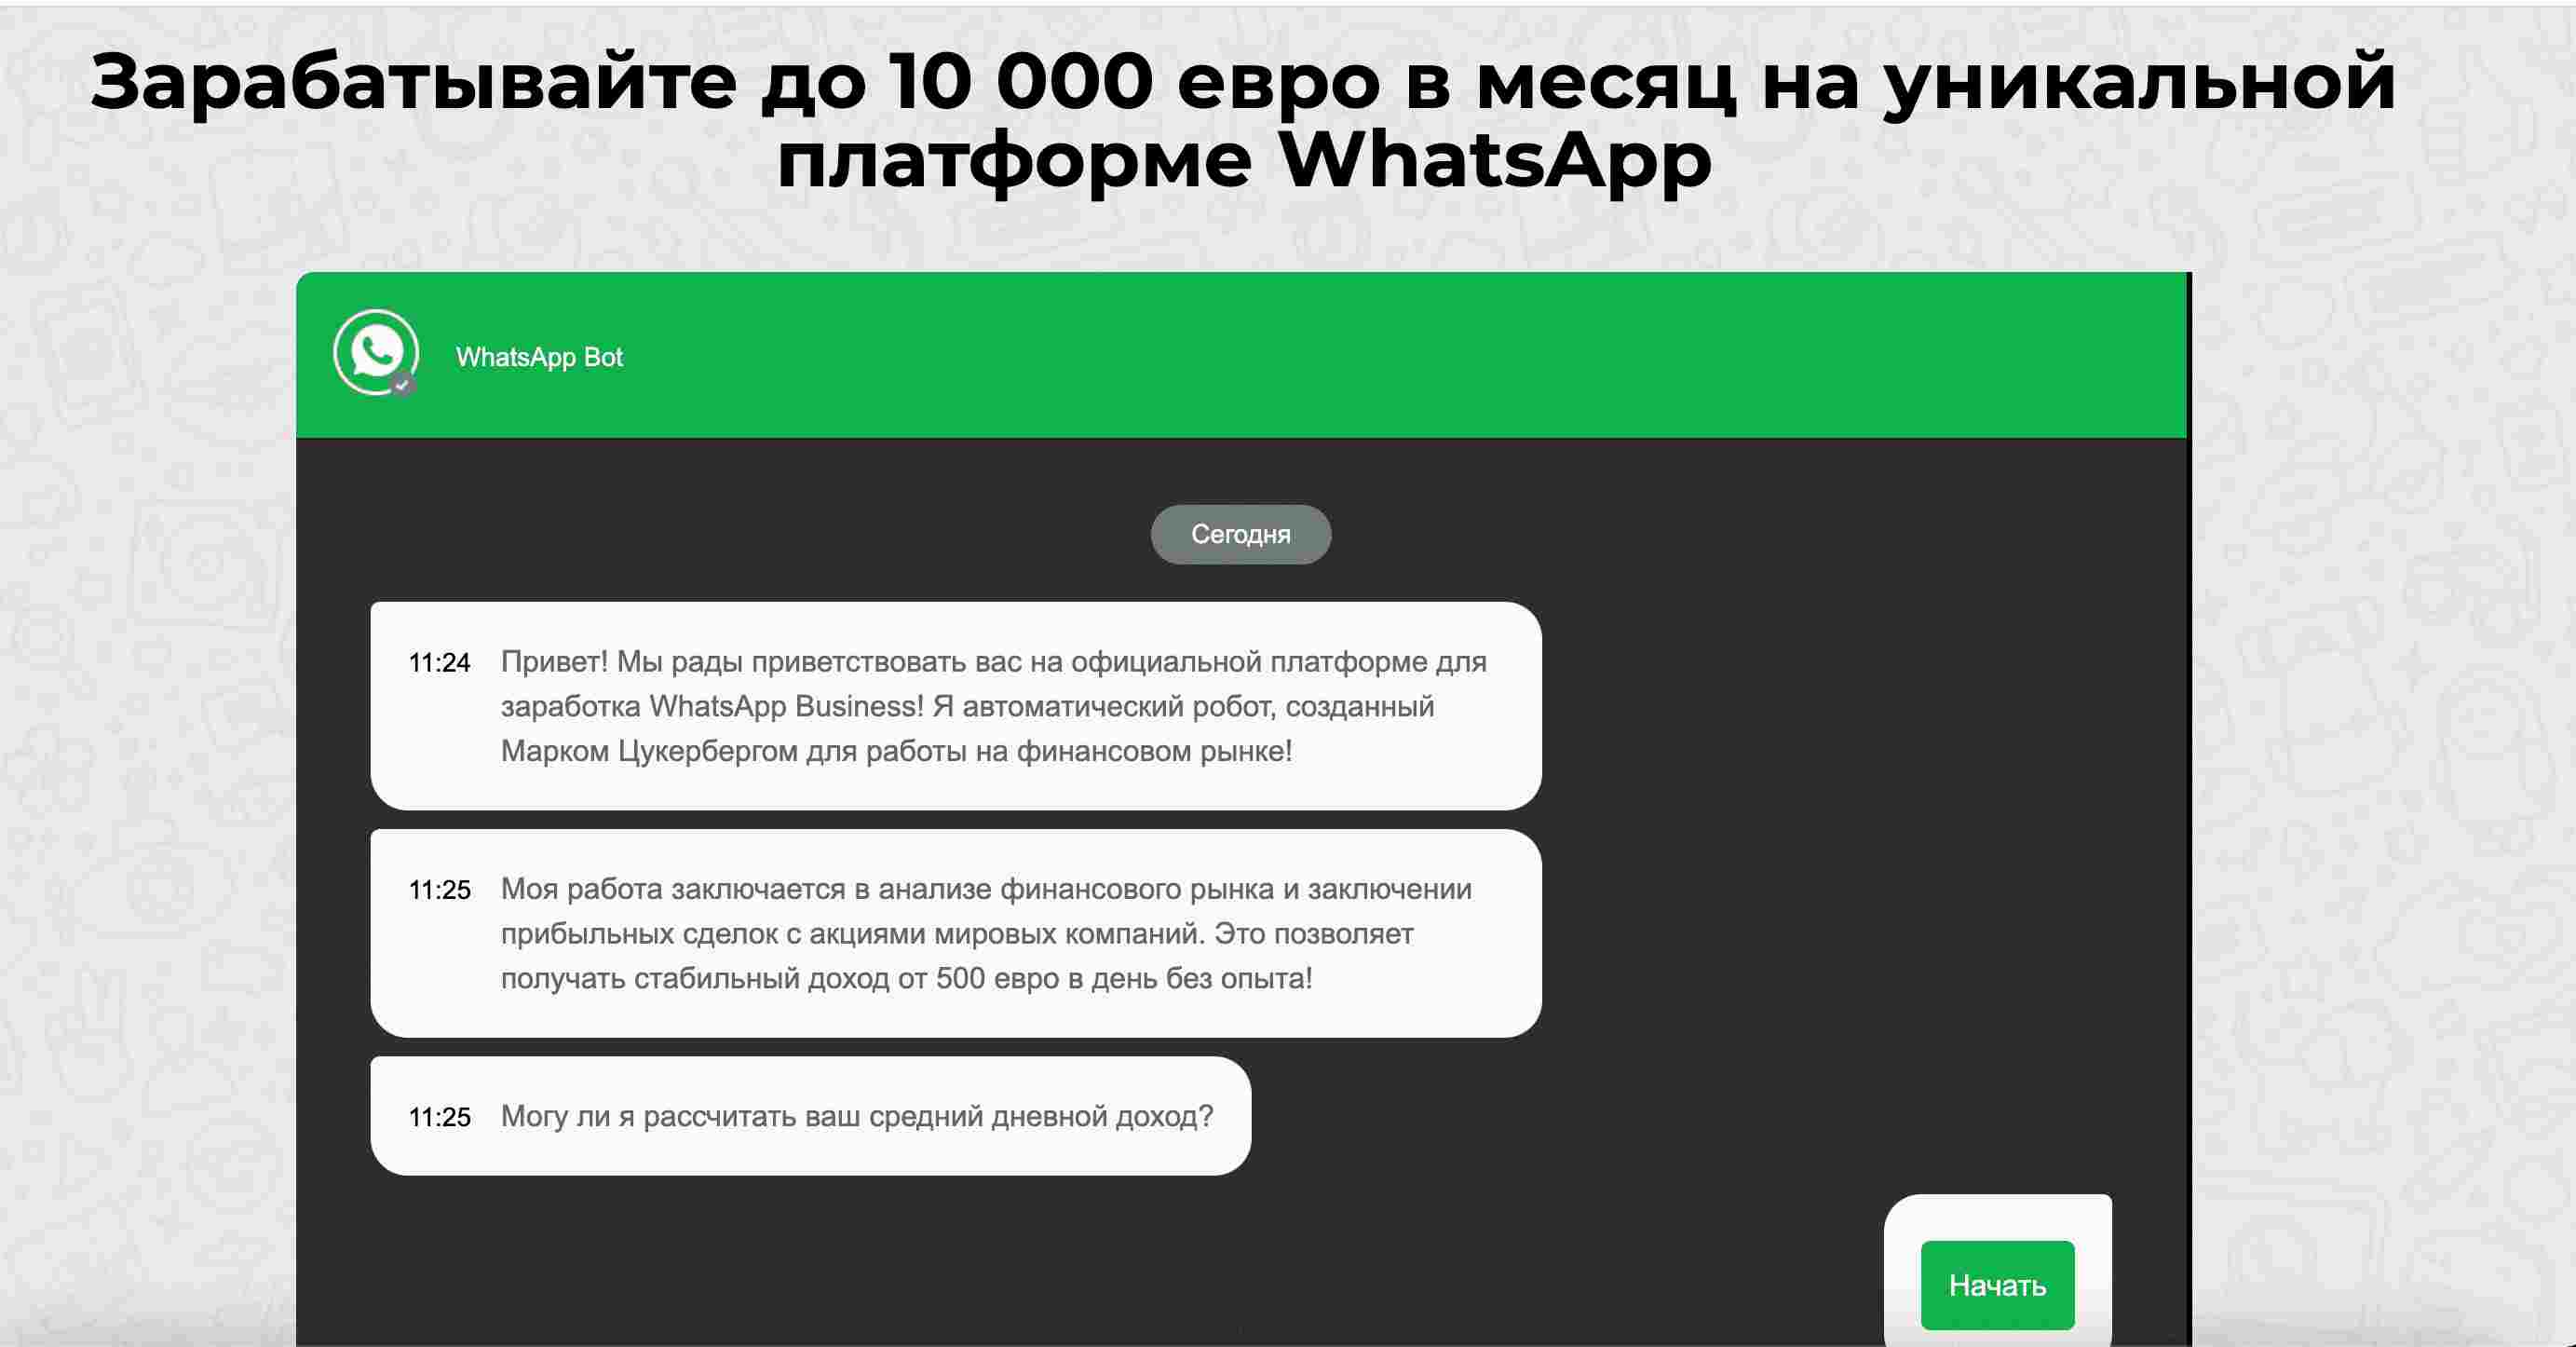 10 000 евро в месяц на уникальной платформе WhatsApp — еще одна схема от аферистов